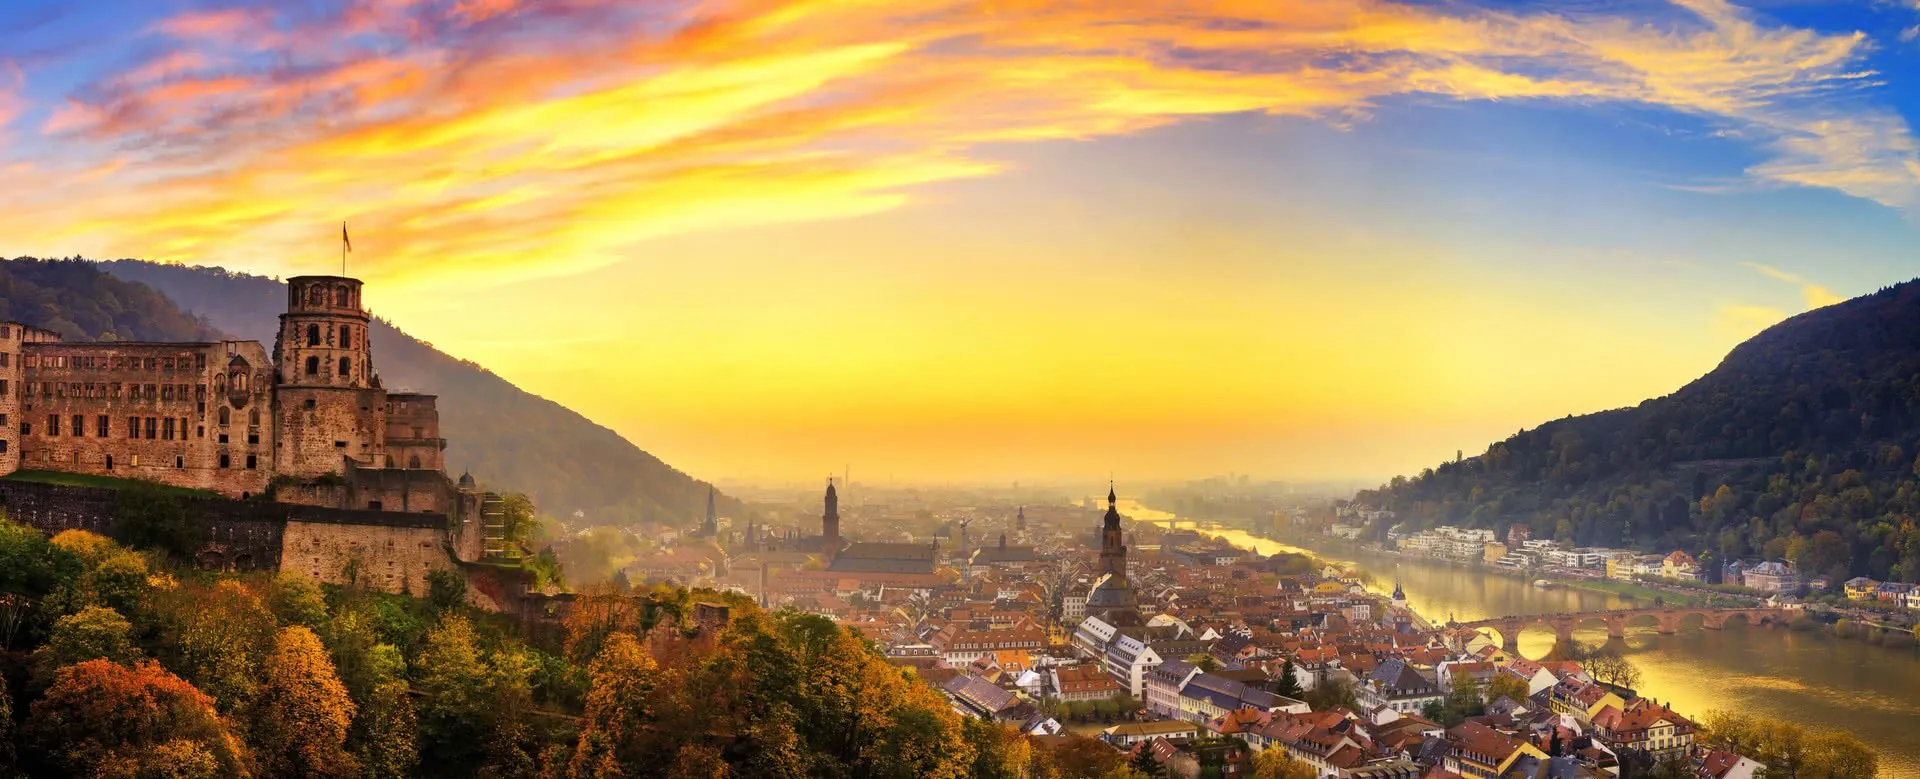 Heidelberg panorama image